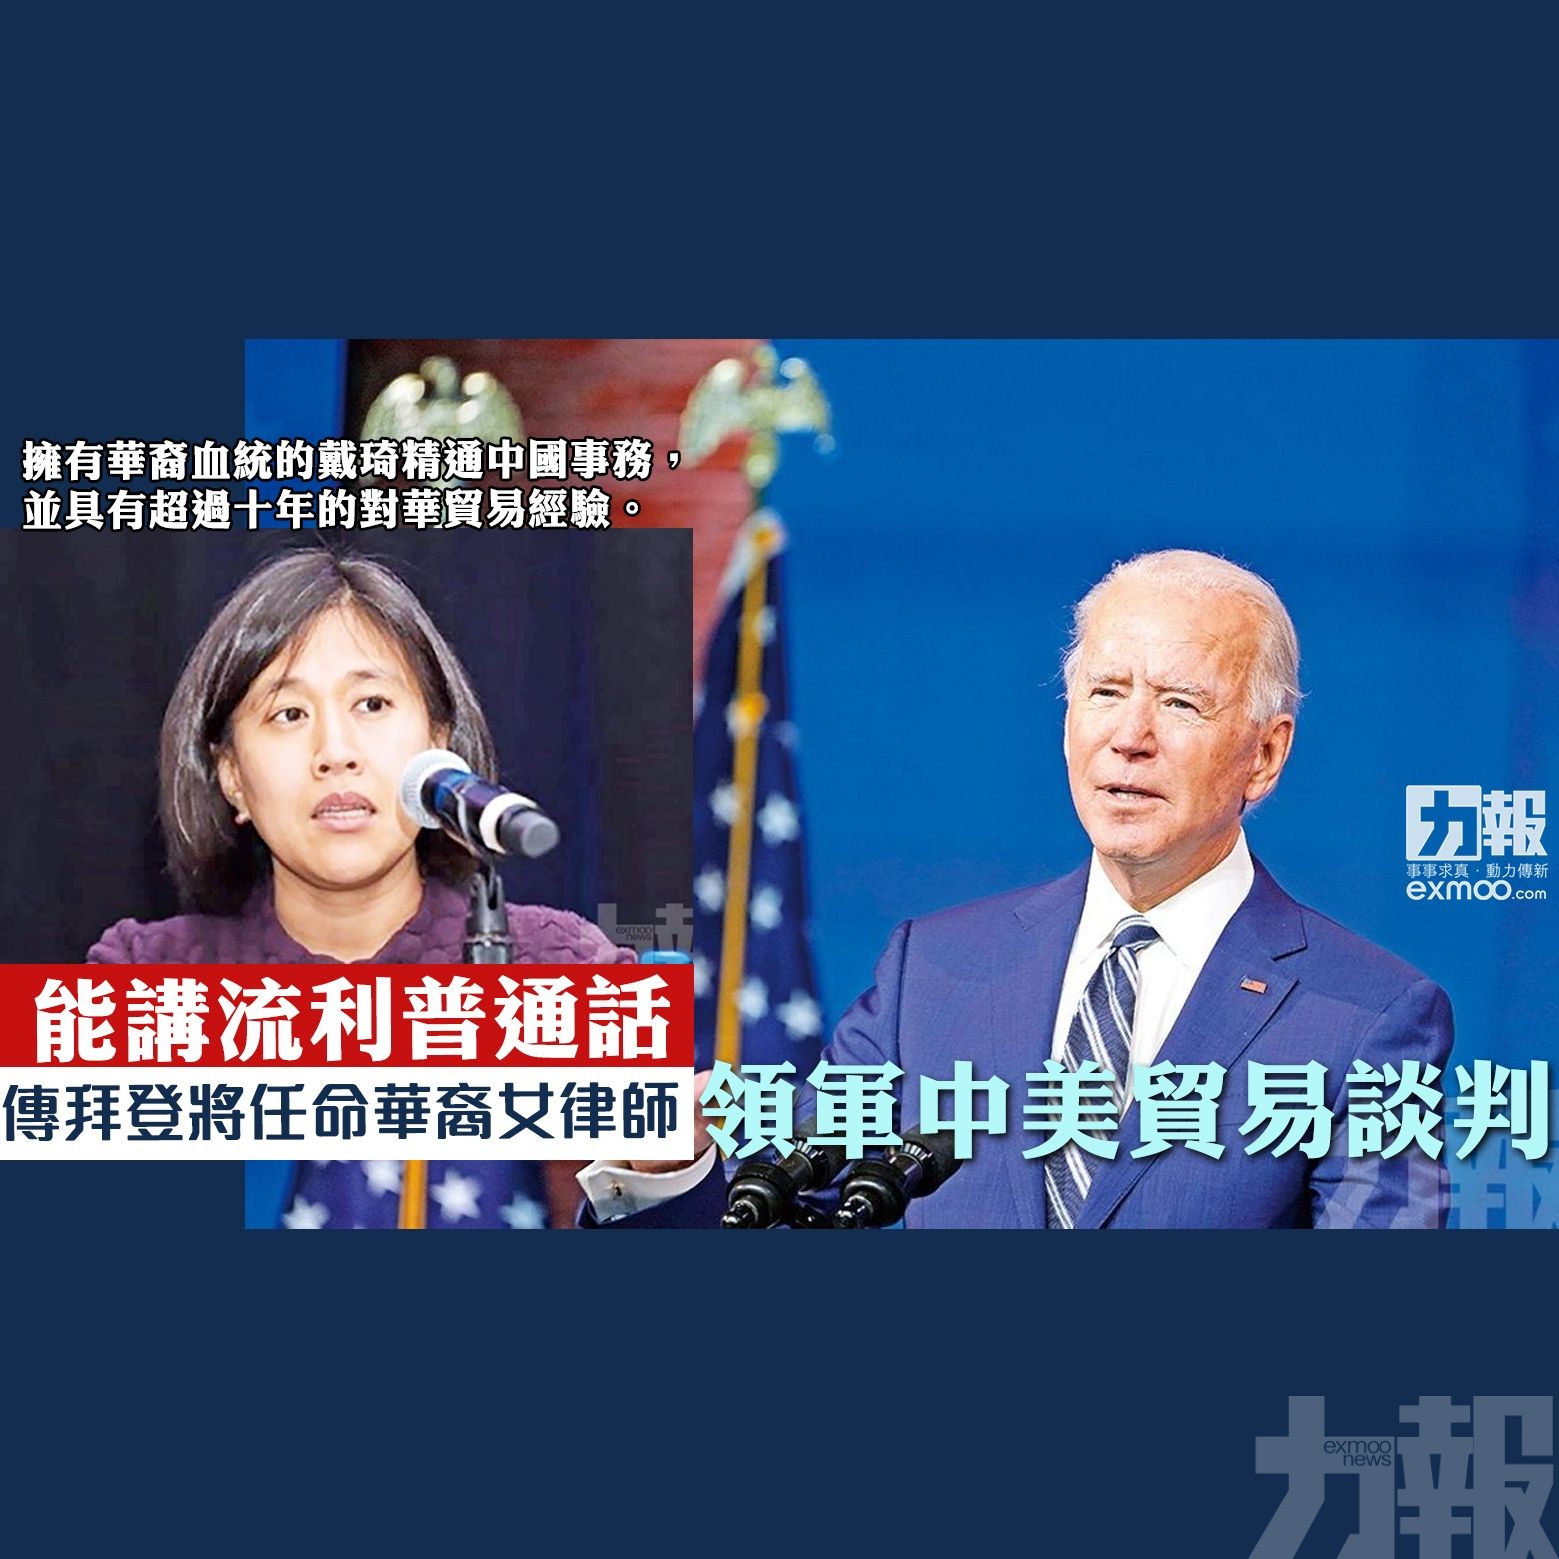 傳拜登將任命華裔女律師  領軍中美貿易談判